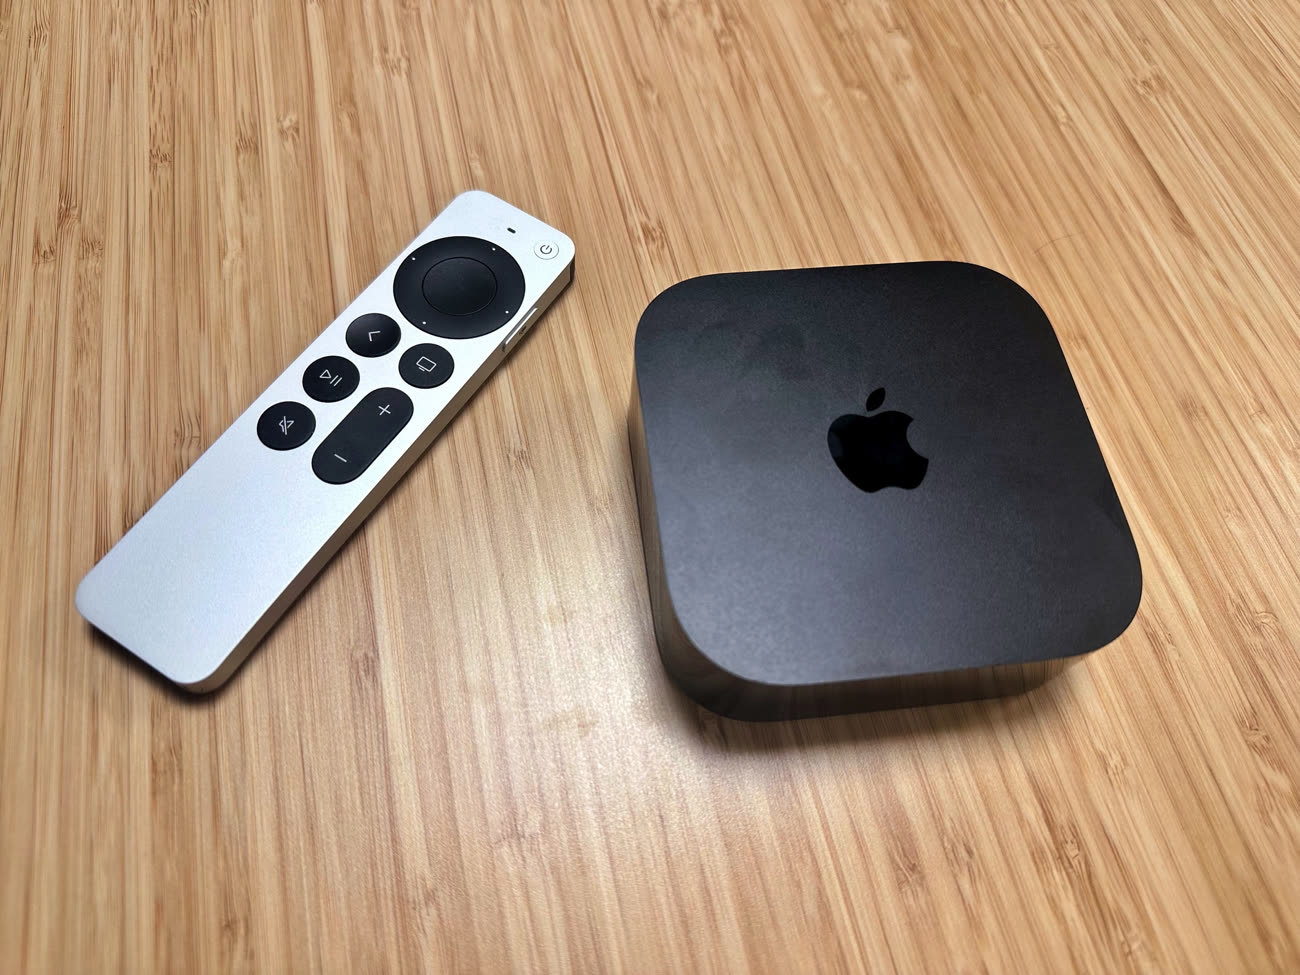 La télécommande de Free pour l'Apple TV 4K est disponible à l'achat 